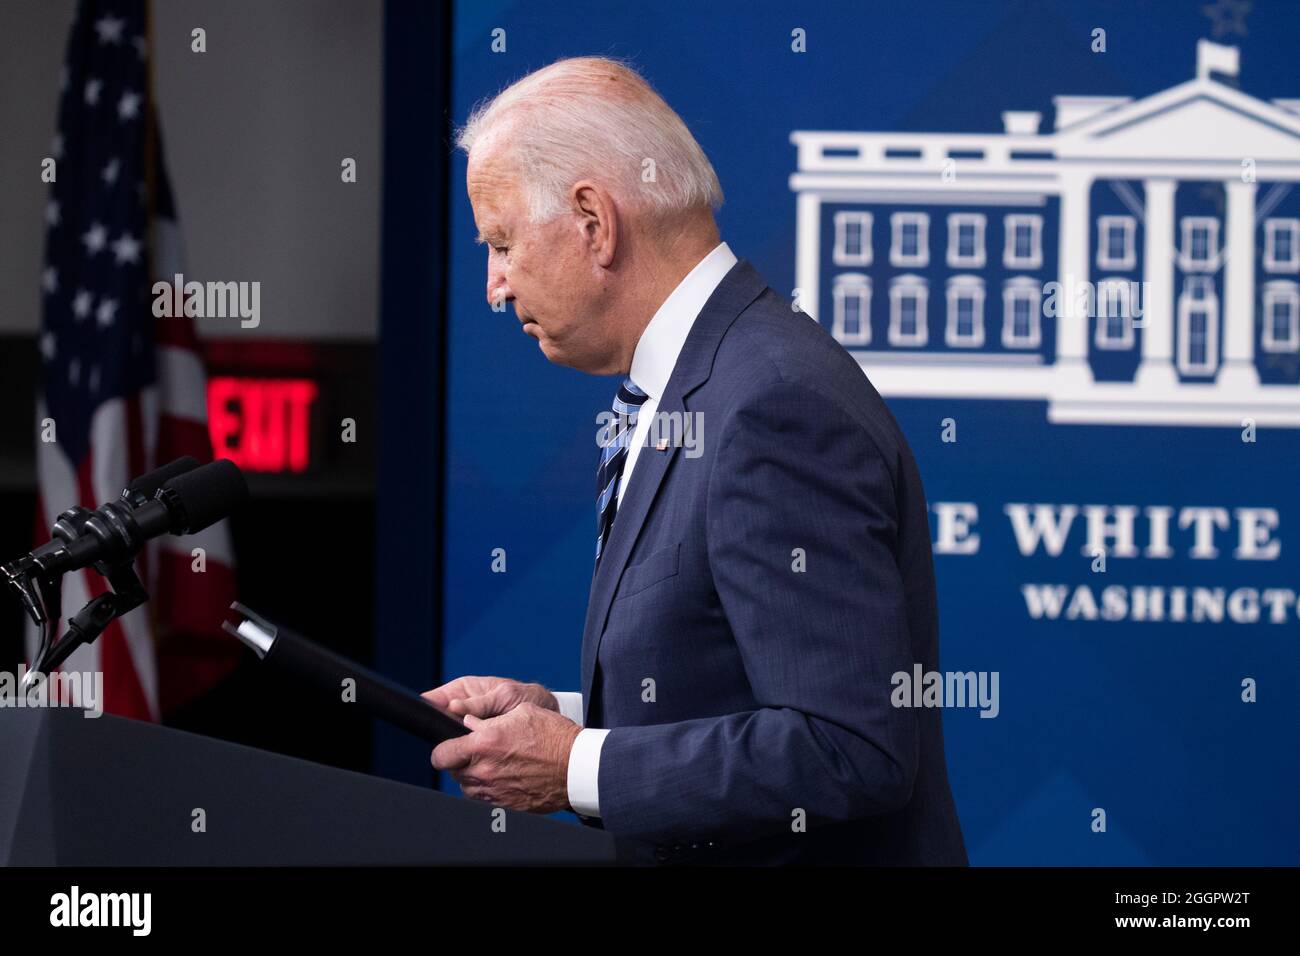 LE président AMÉRICAIN Joe Biden prononce un discours sur l'ouragan Ida le 2 septembre 2021. Crédit: Michael Reynolds/Pool via CNP/MediaPunch Banque D'Images